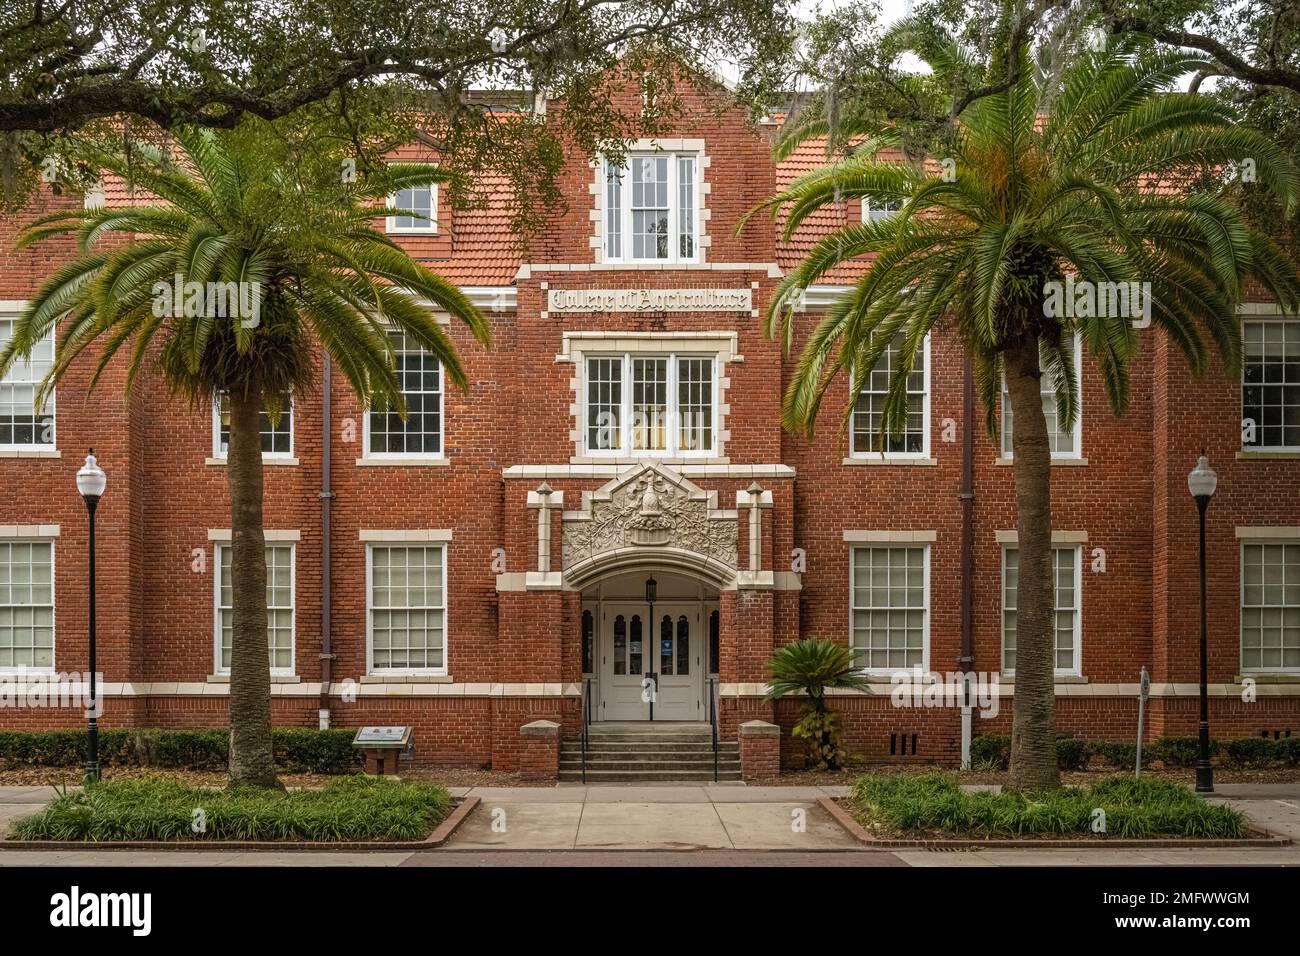 Le bâtiment historique du Collège d'agriculture de 1912 sur le campus de l'Université de Floride est actuellement connu sous le nom de Griffin-Floyd Hall. (ÉTATS-UNIS) Banque D'Images